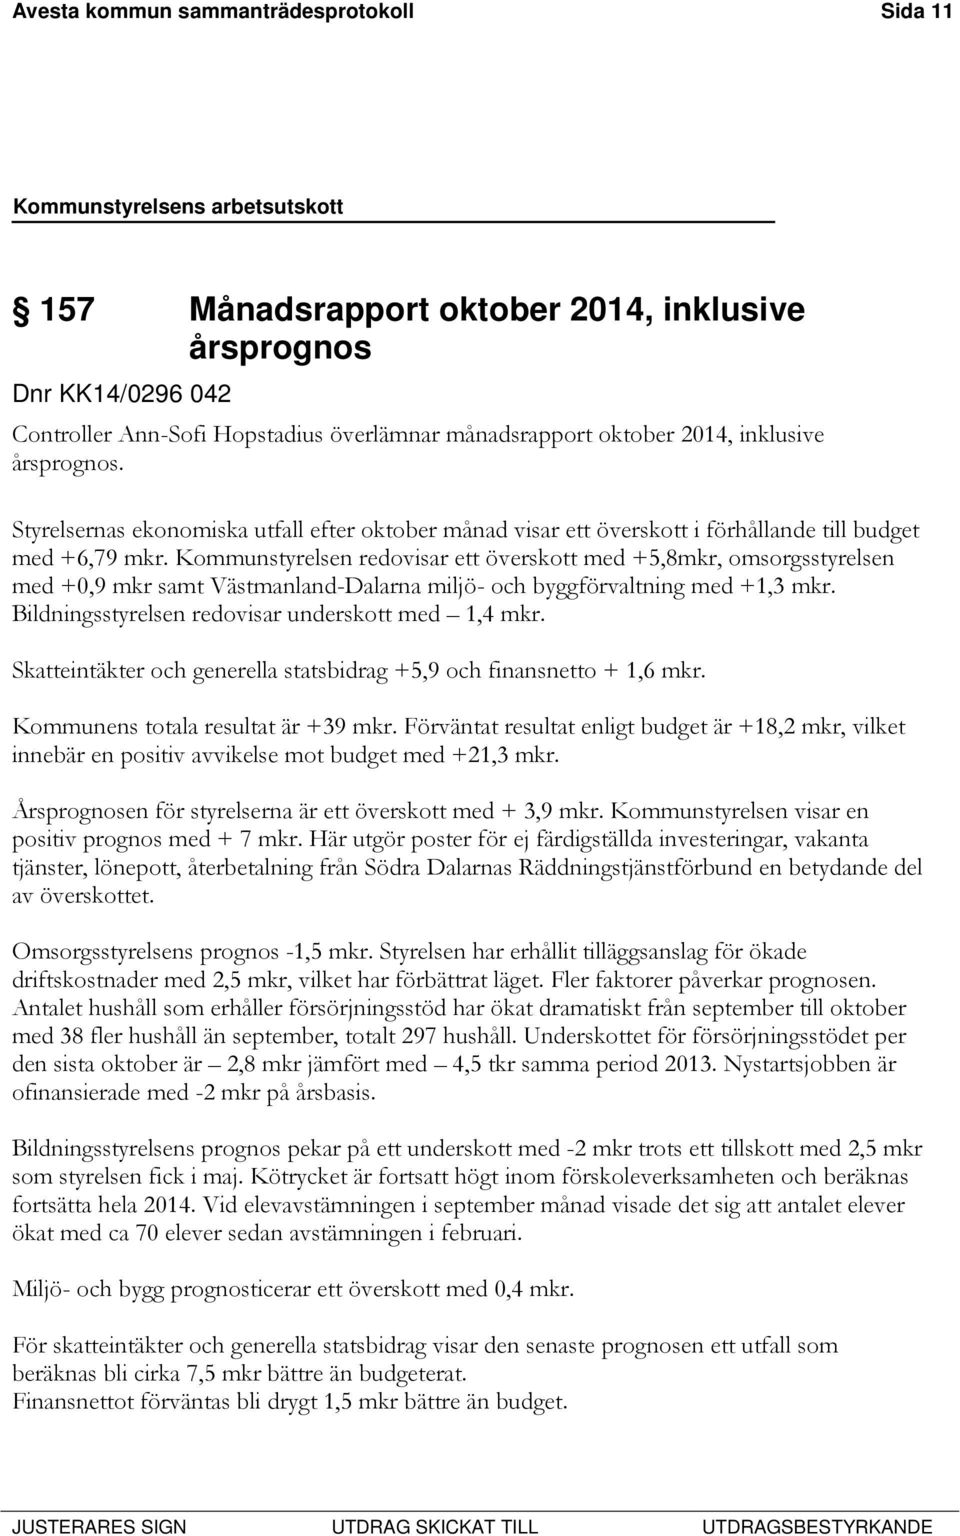 Kommunstyrelsen redovisar ett överskott med +5,8mkr, omsorgsstyrelsen med +0,9 mkr samt Västmanland-Dalarna miljö- och byggförvaltning med +1,3 mkr.